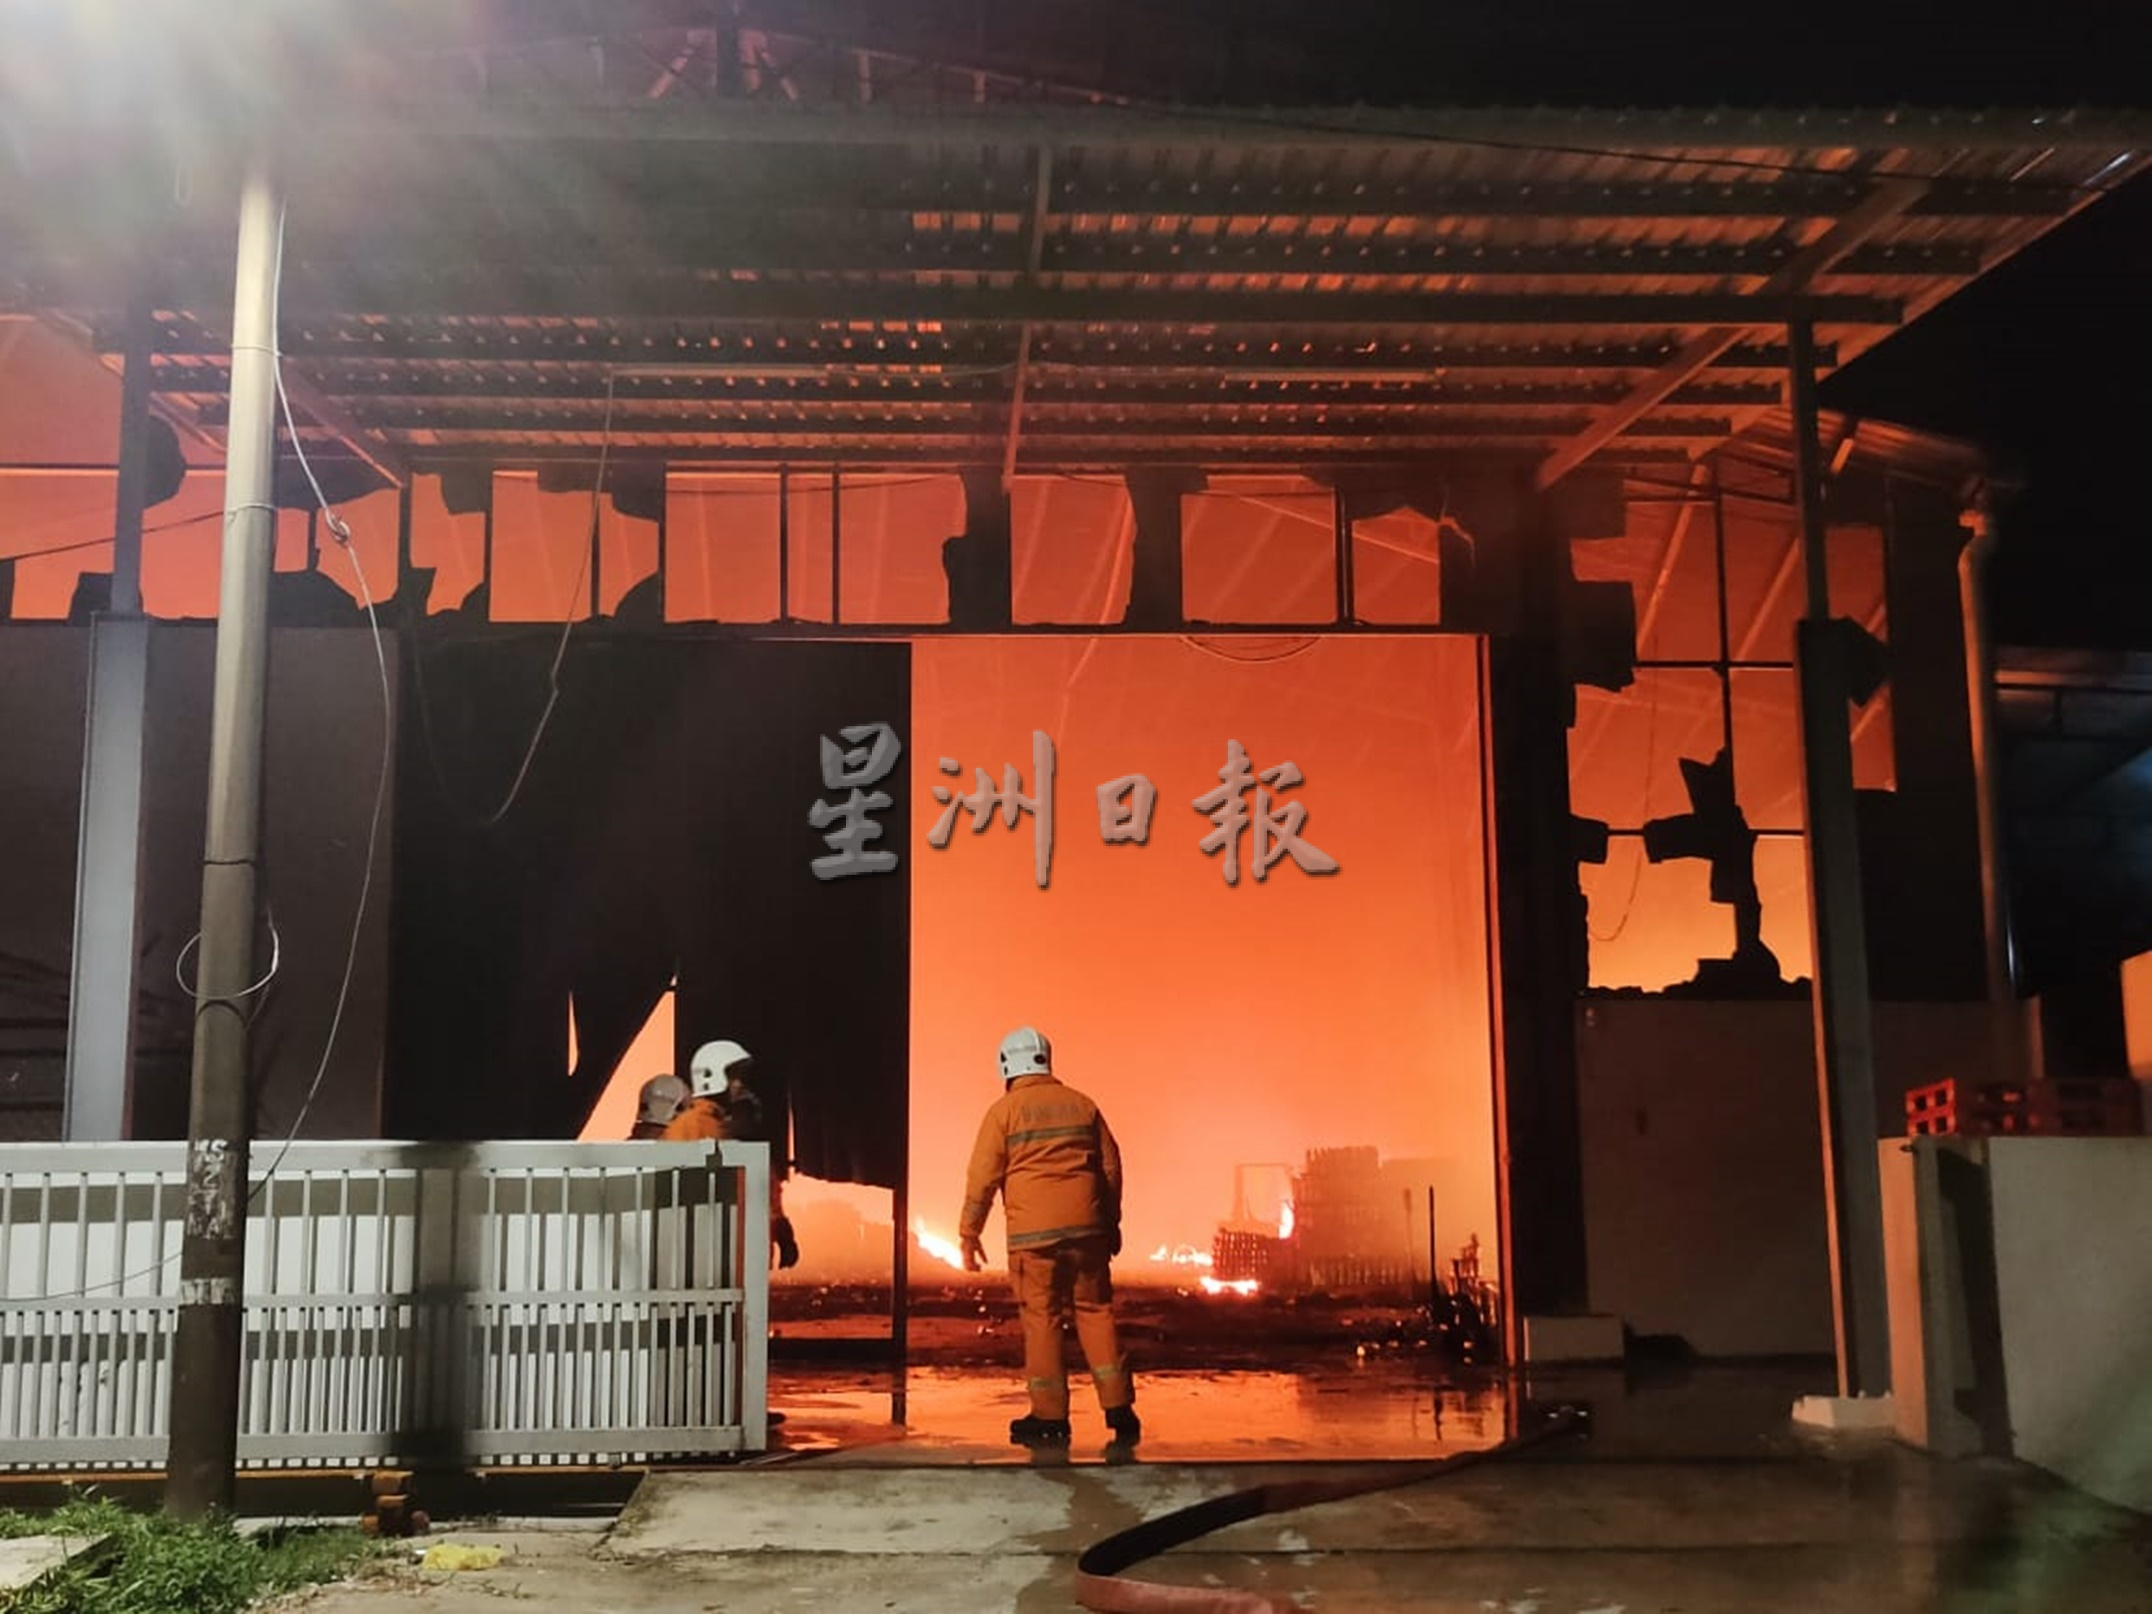 甘榜务央食品工厂火患 水压低阻碍救火